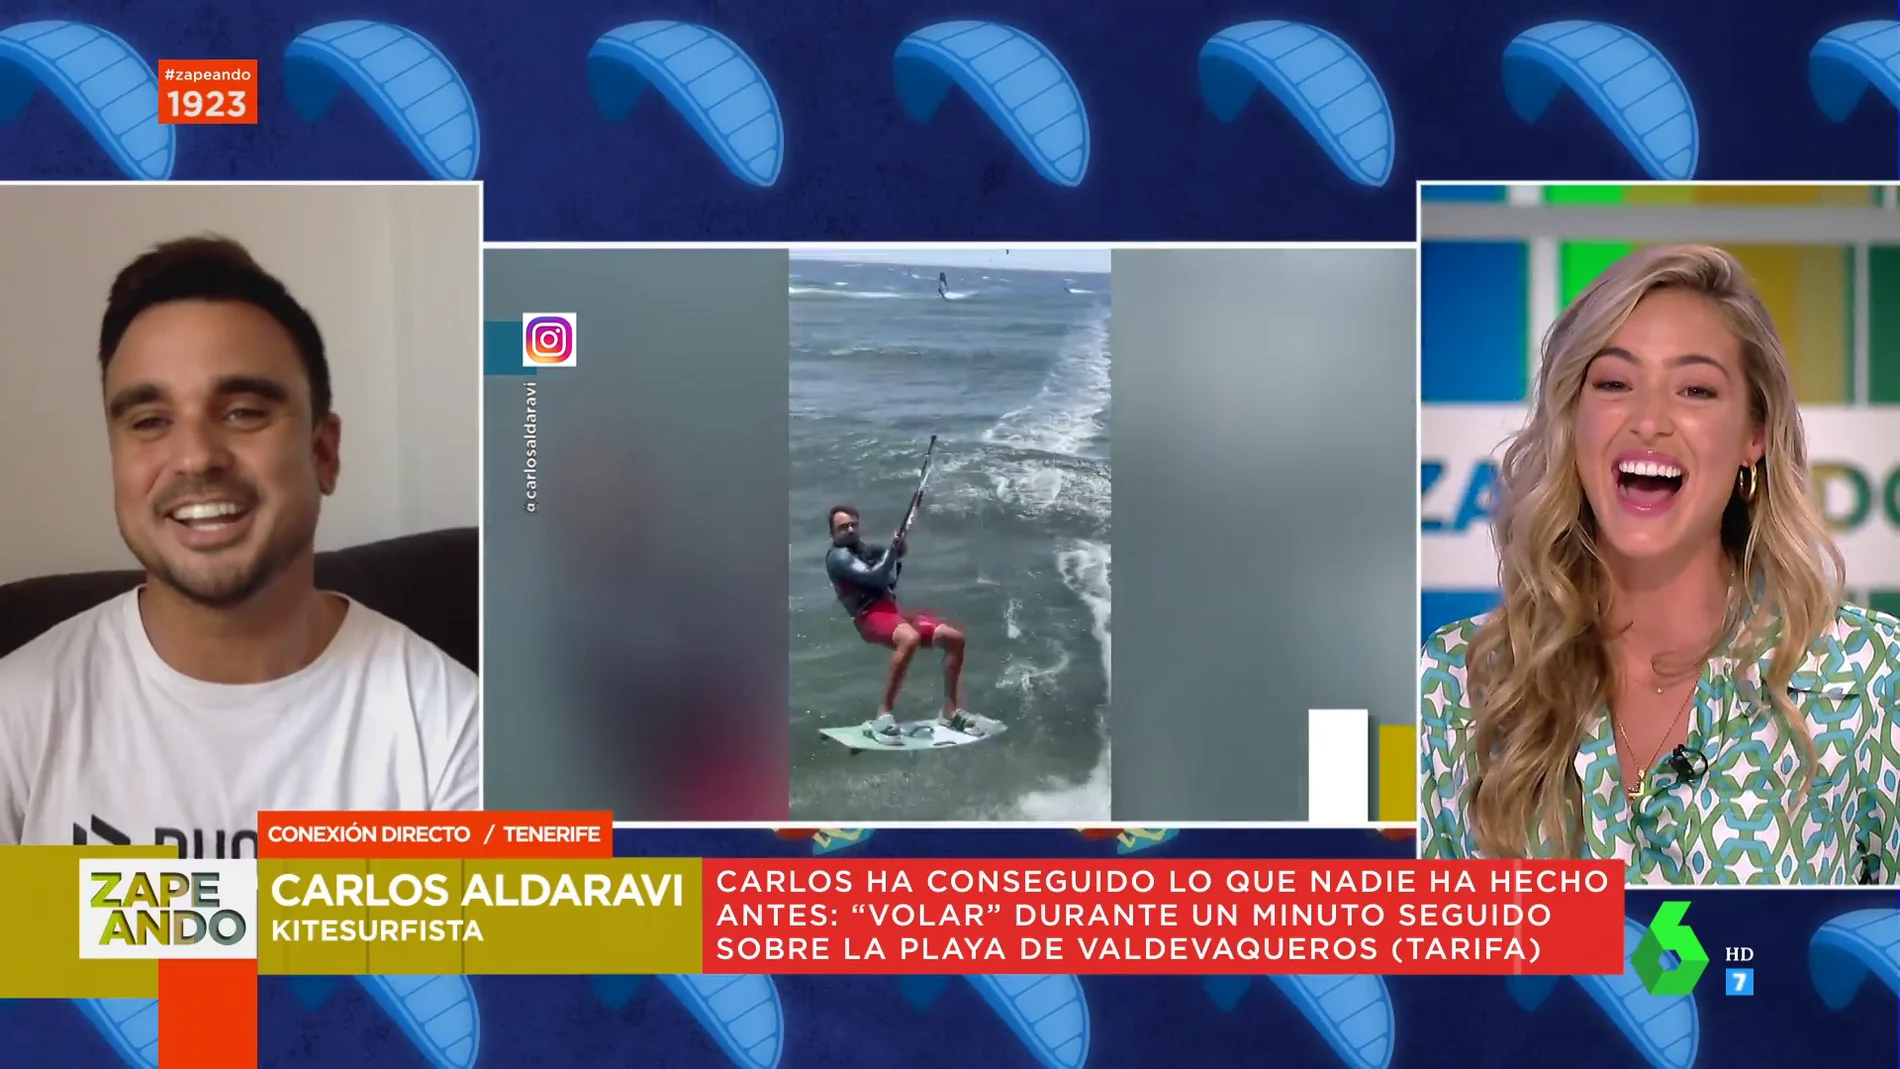 Carlos Aldavari, el kitesurfista de los récords tras 'volar' durante un minuto sobre una playa de Tarifa: